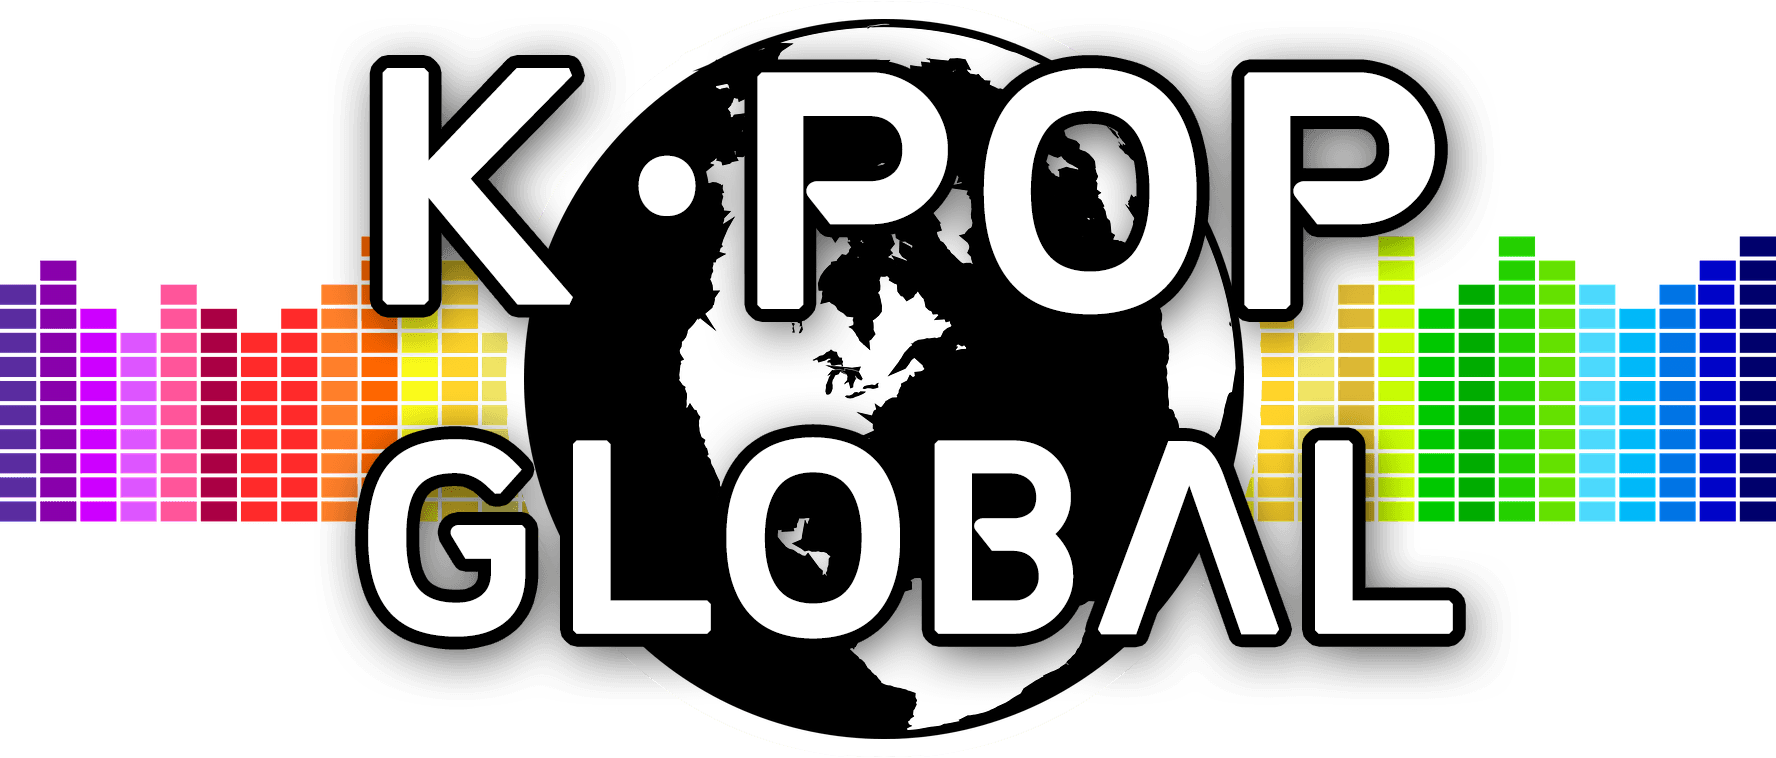 Kpop Logo - LogoDix